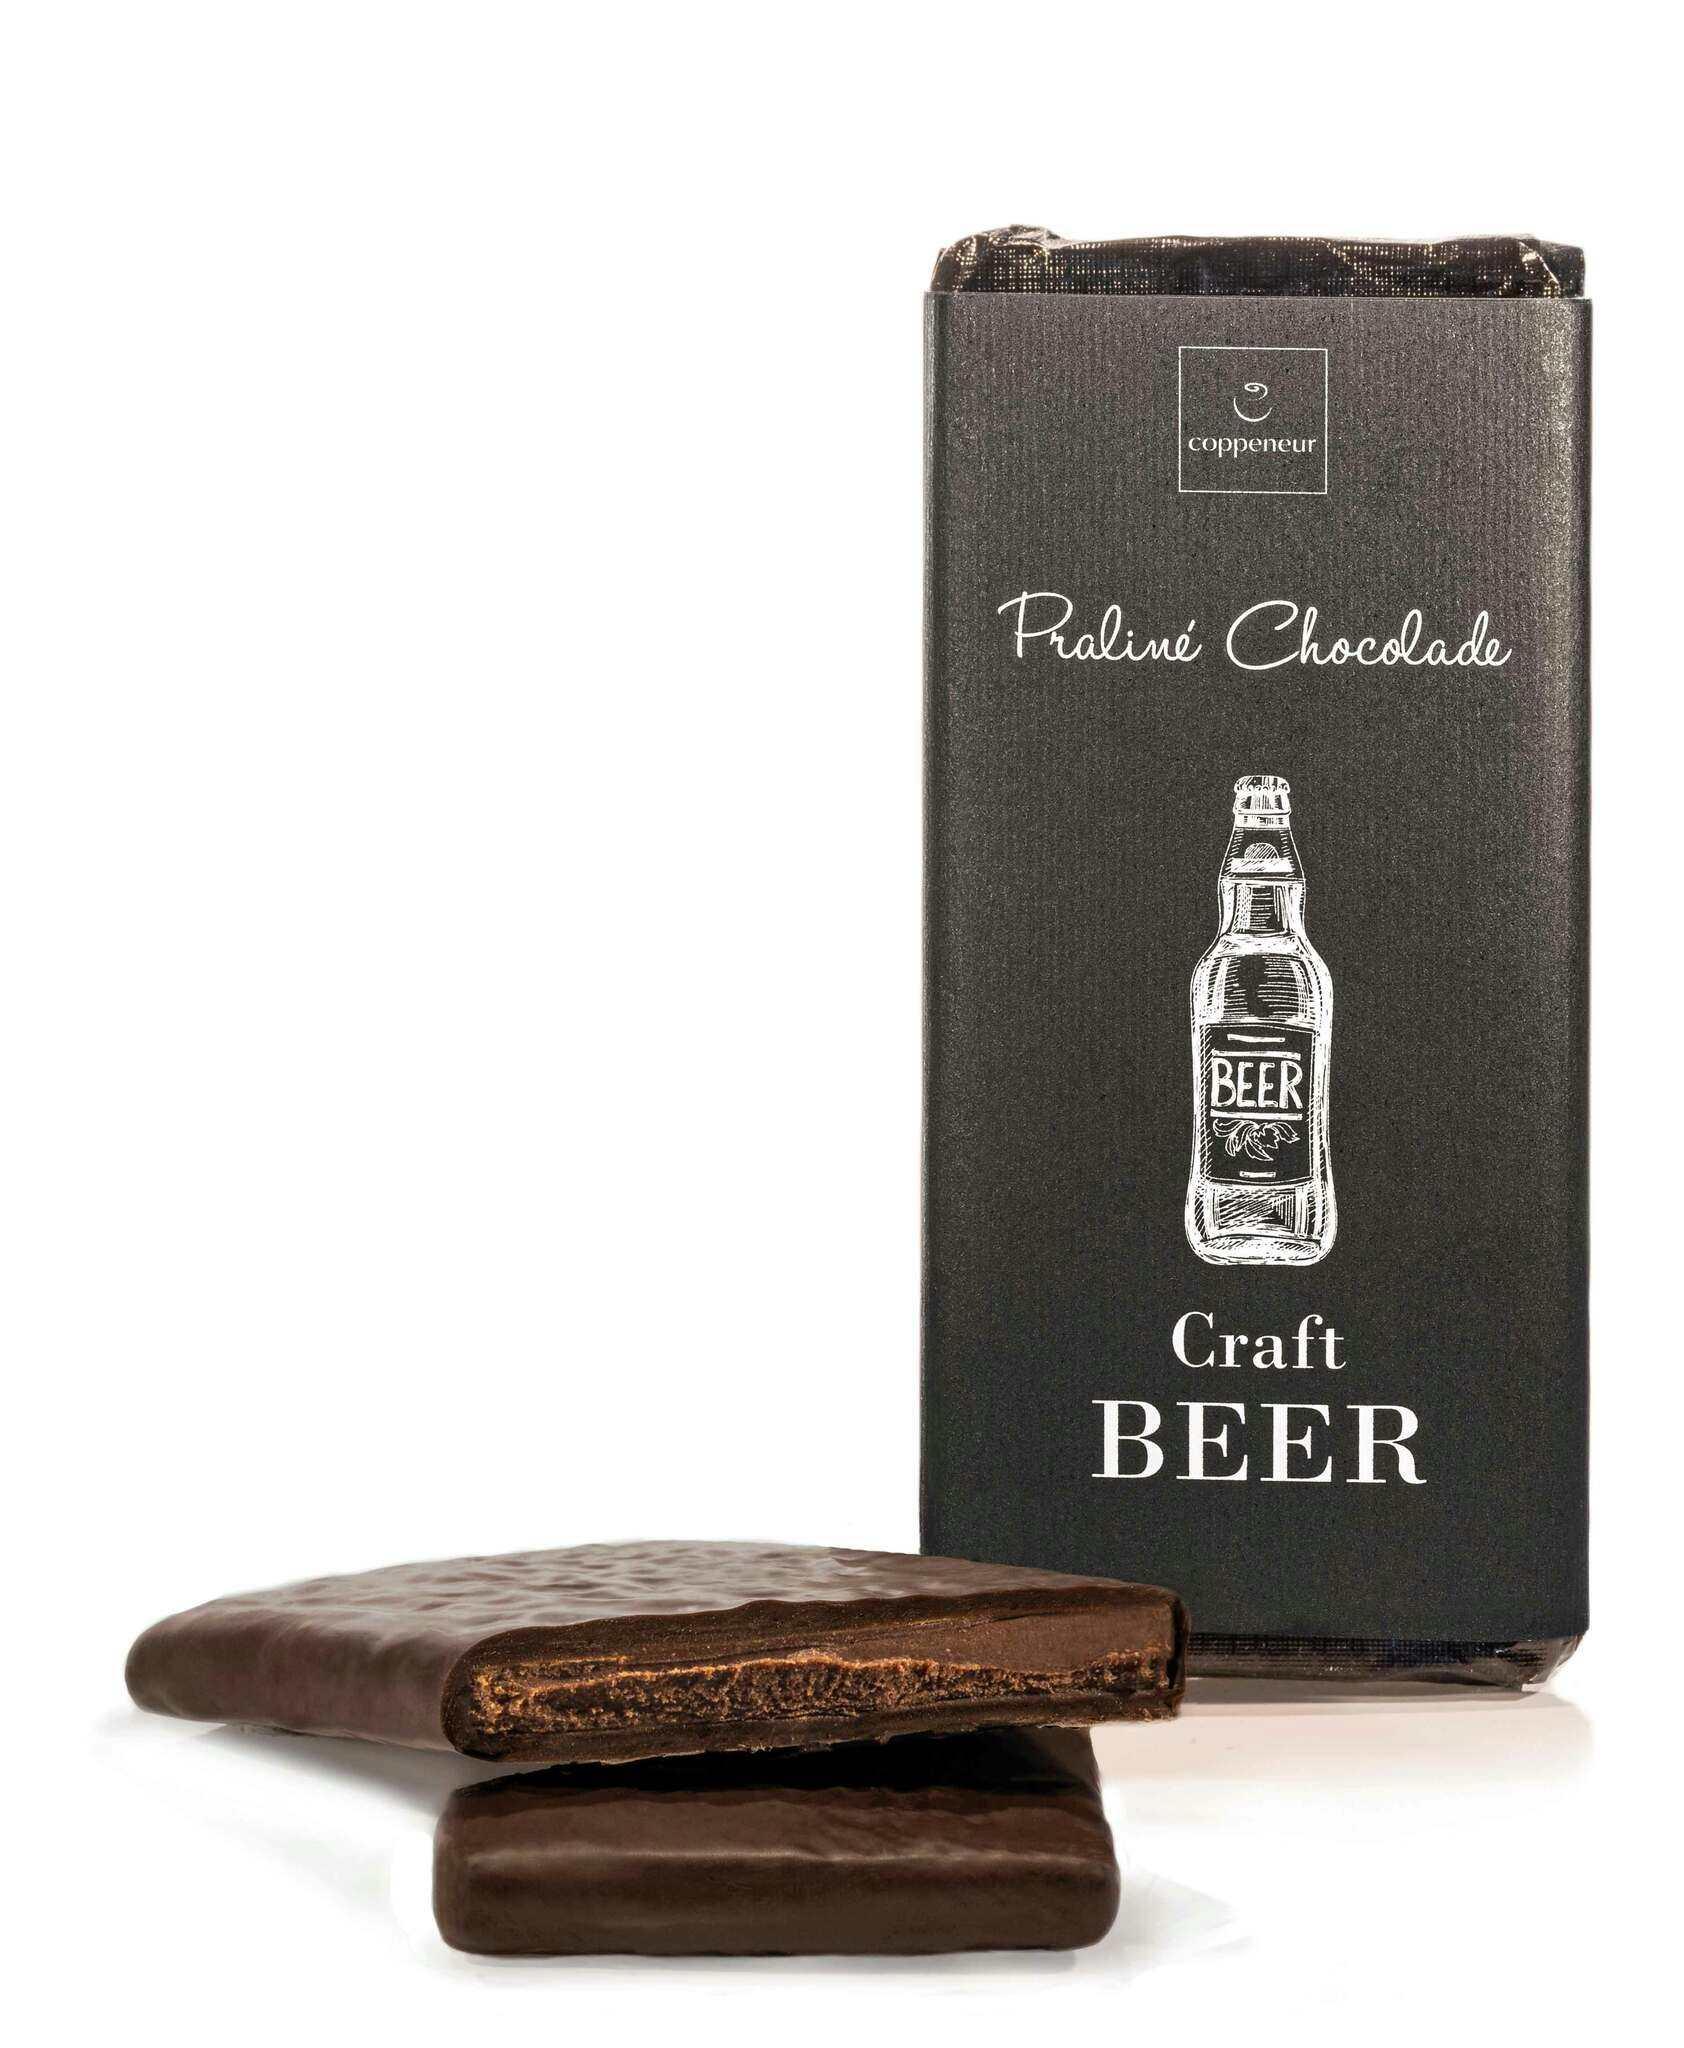 Chokladkaka - 70% Kakao - Craft Beer